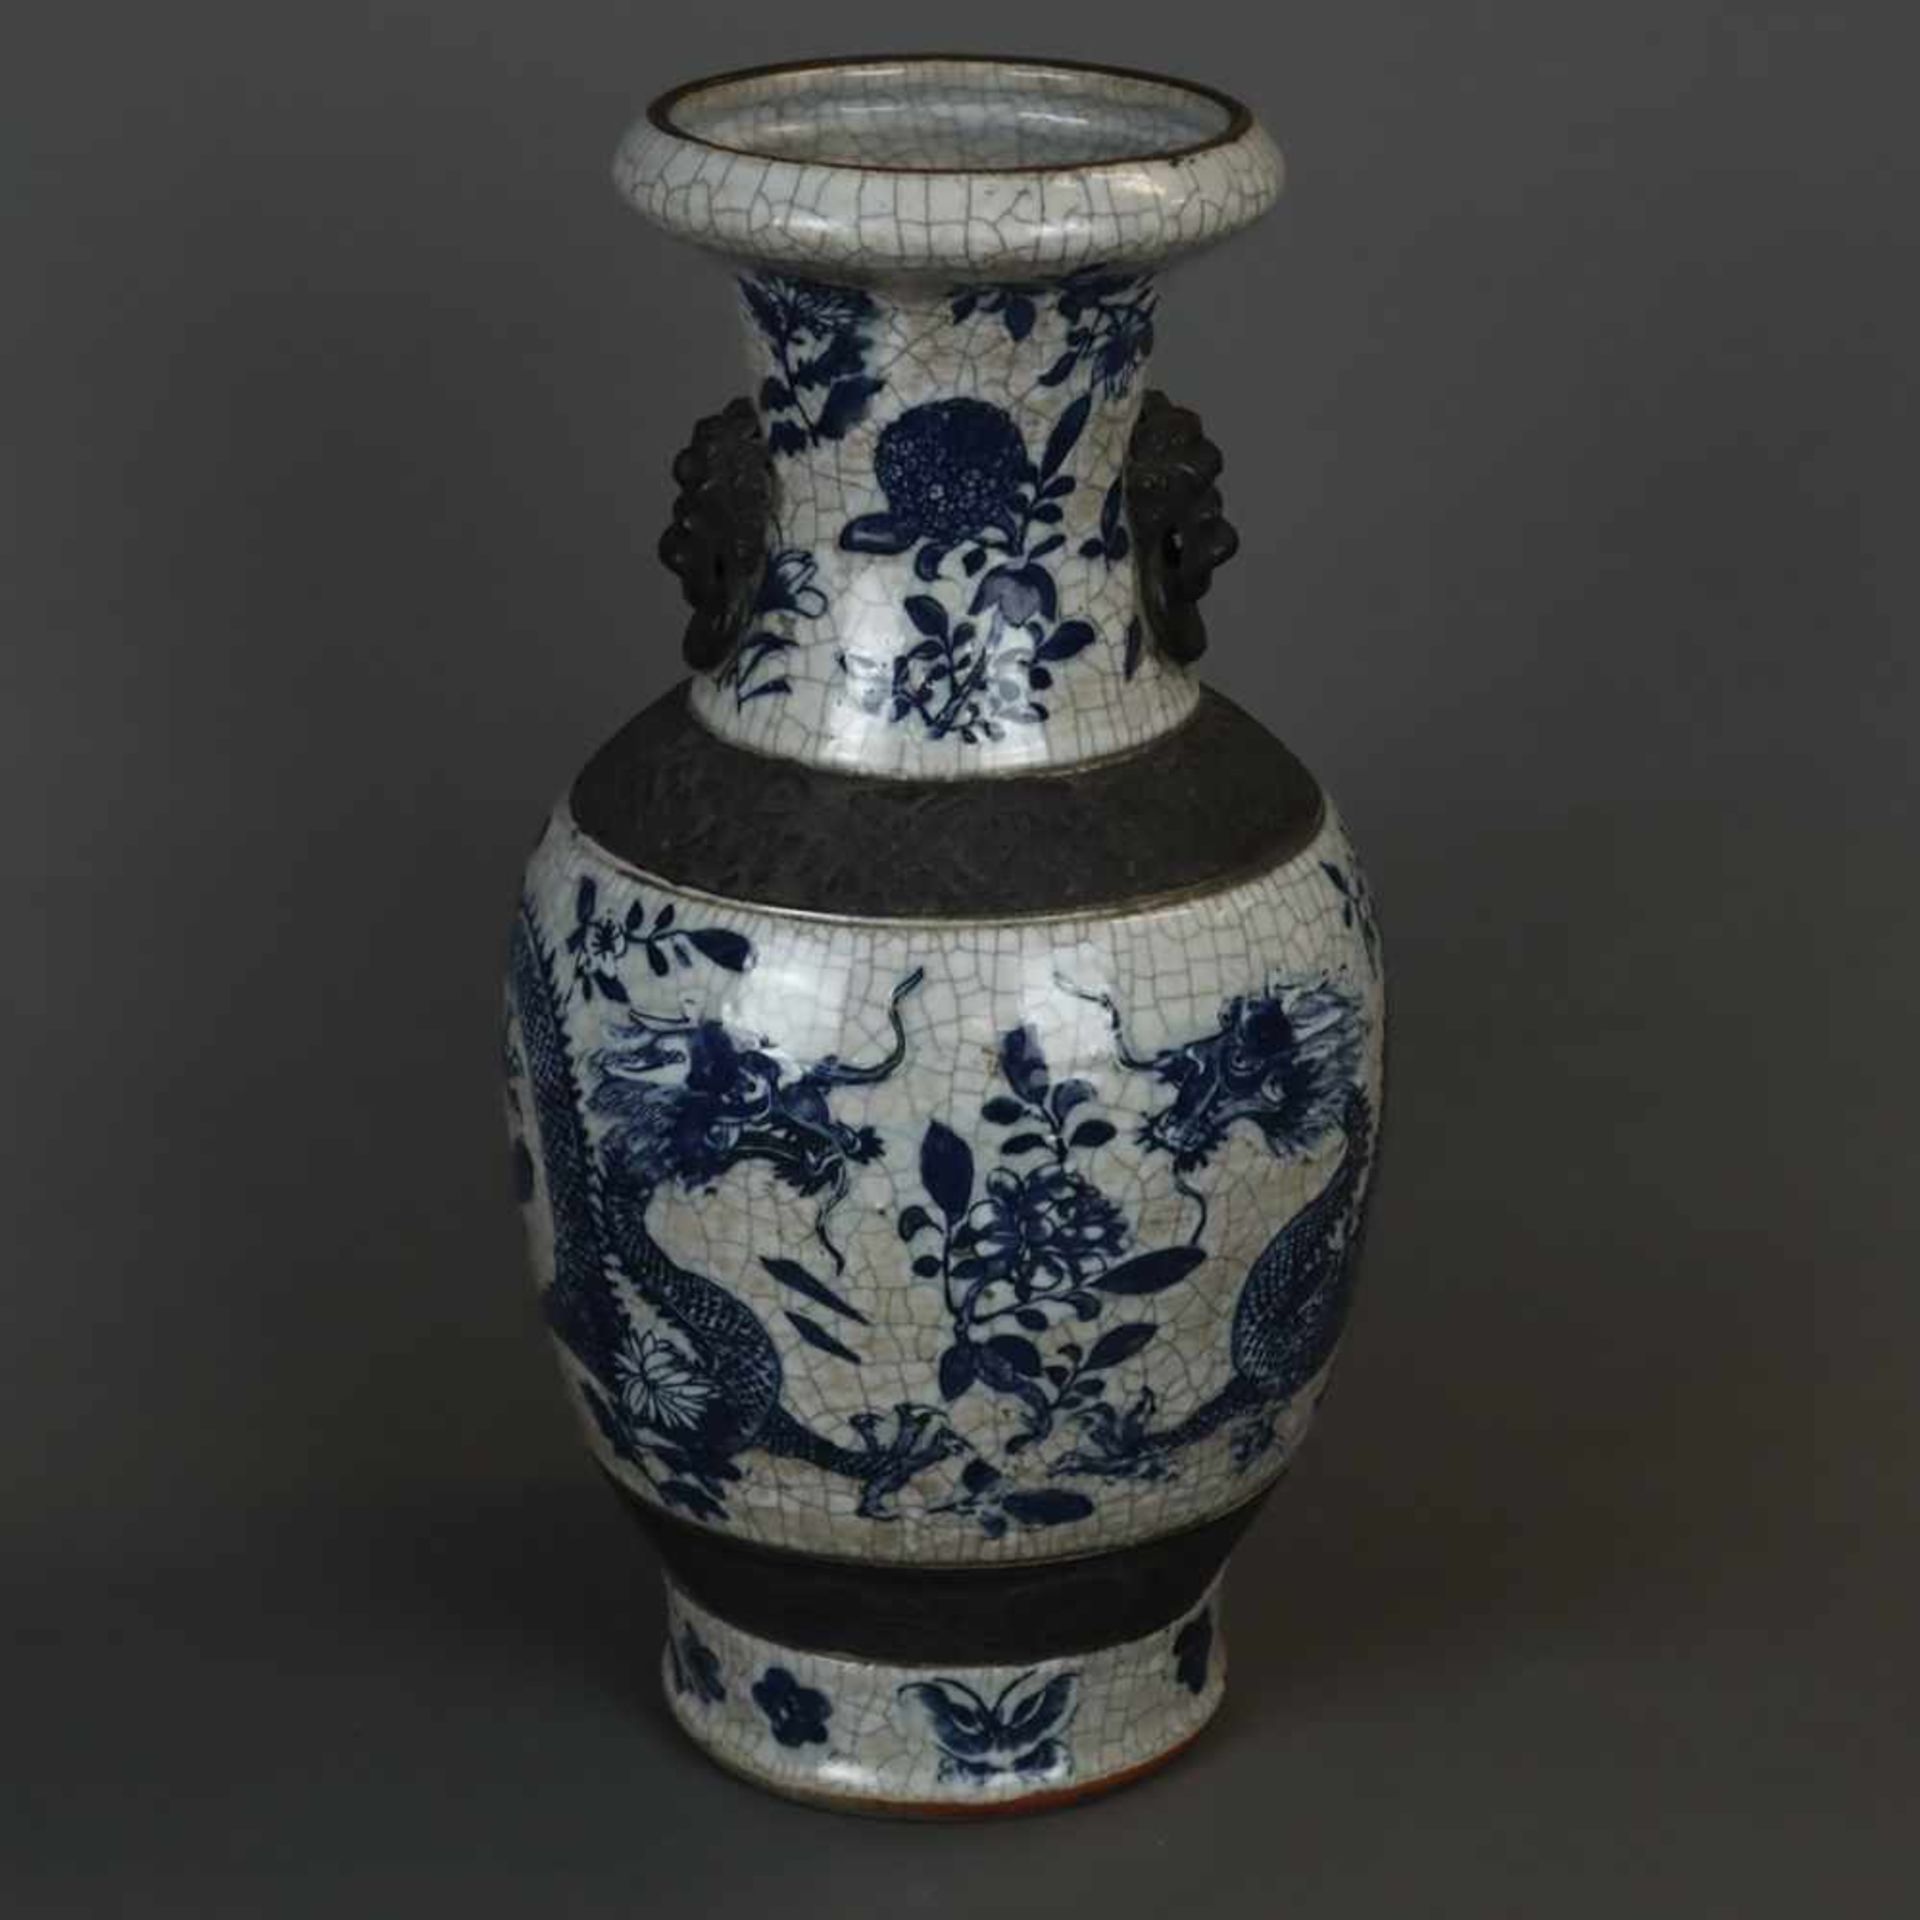 Balustervase - China, feine Handbemalung in Blau mit Drachen- und Blütenmotiven, gräuliche Glasur